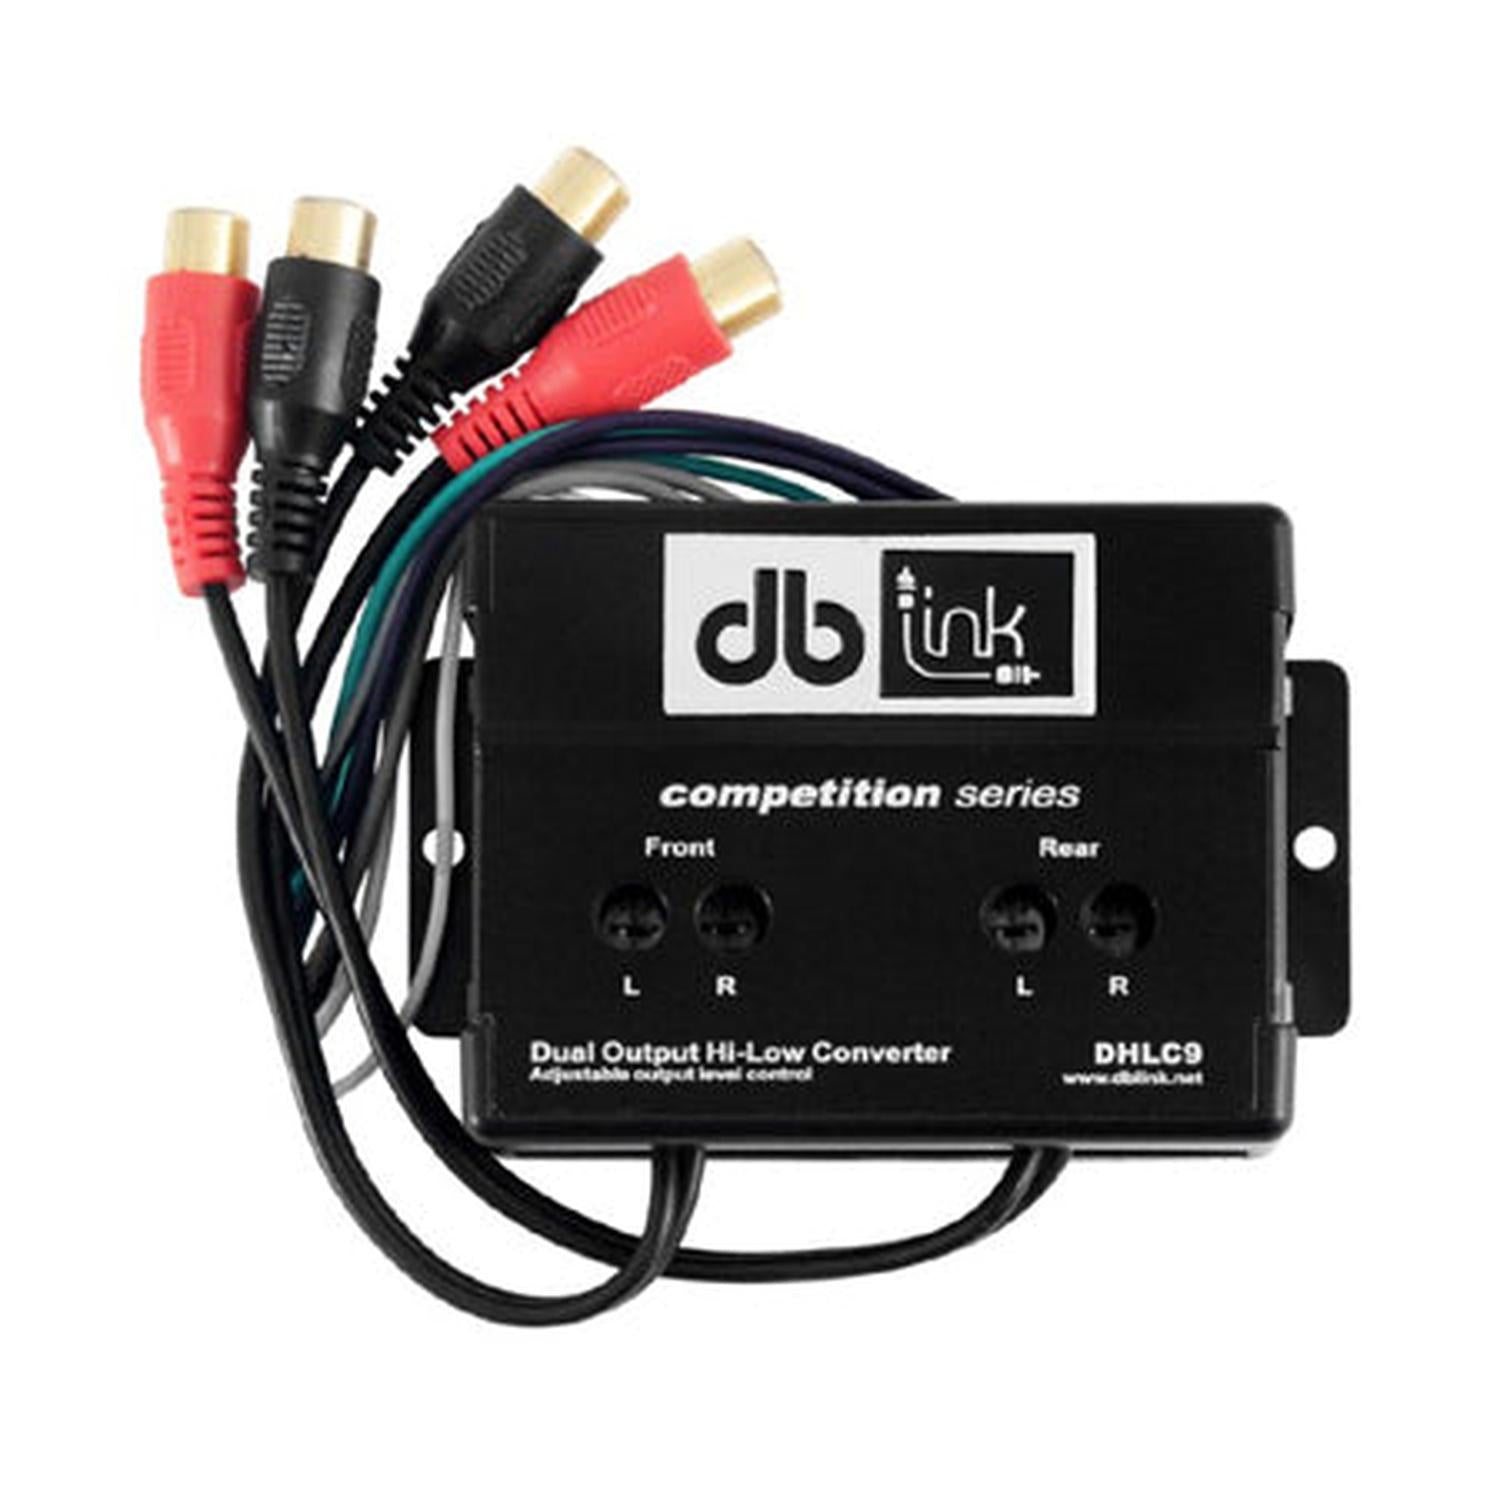 Convertidor Hi-Low de Doble Salida DB Link DHLC9 4 Canales RCA Salida Ajustable Chapado Oro - Audioshop México lo mejor en Car Audio en México -  DB Link